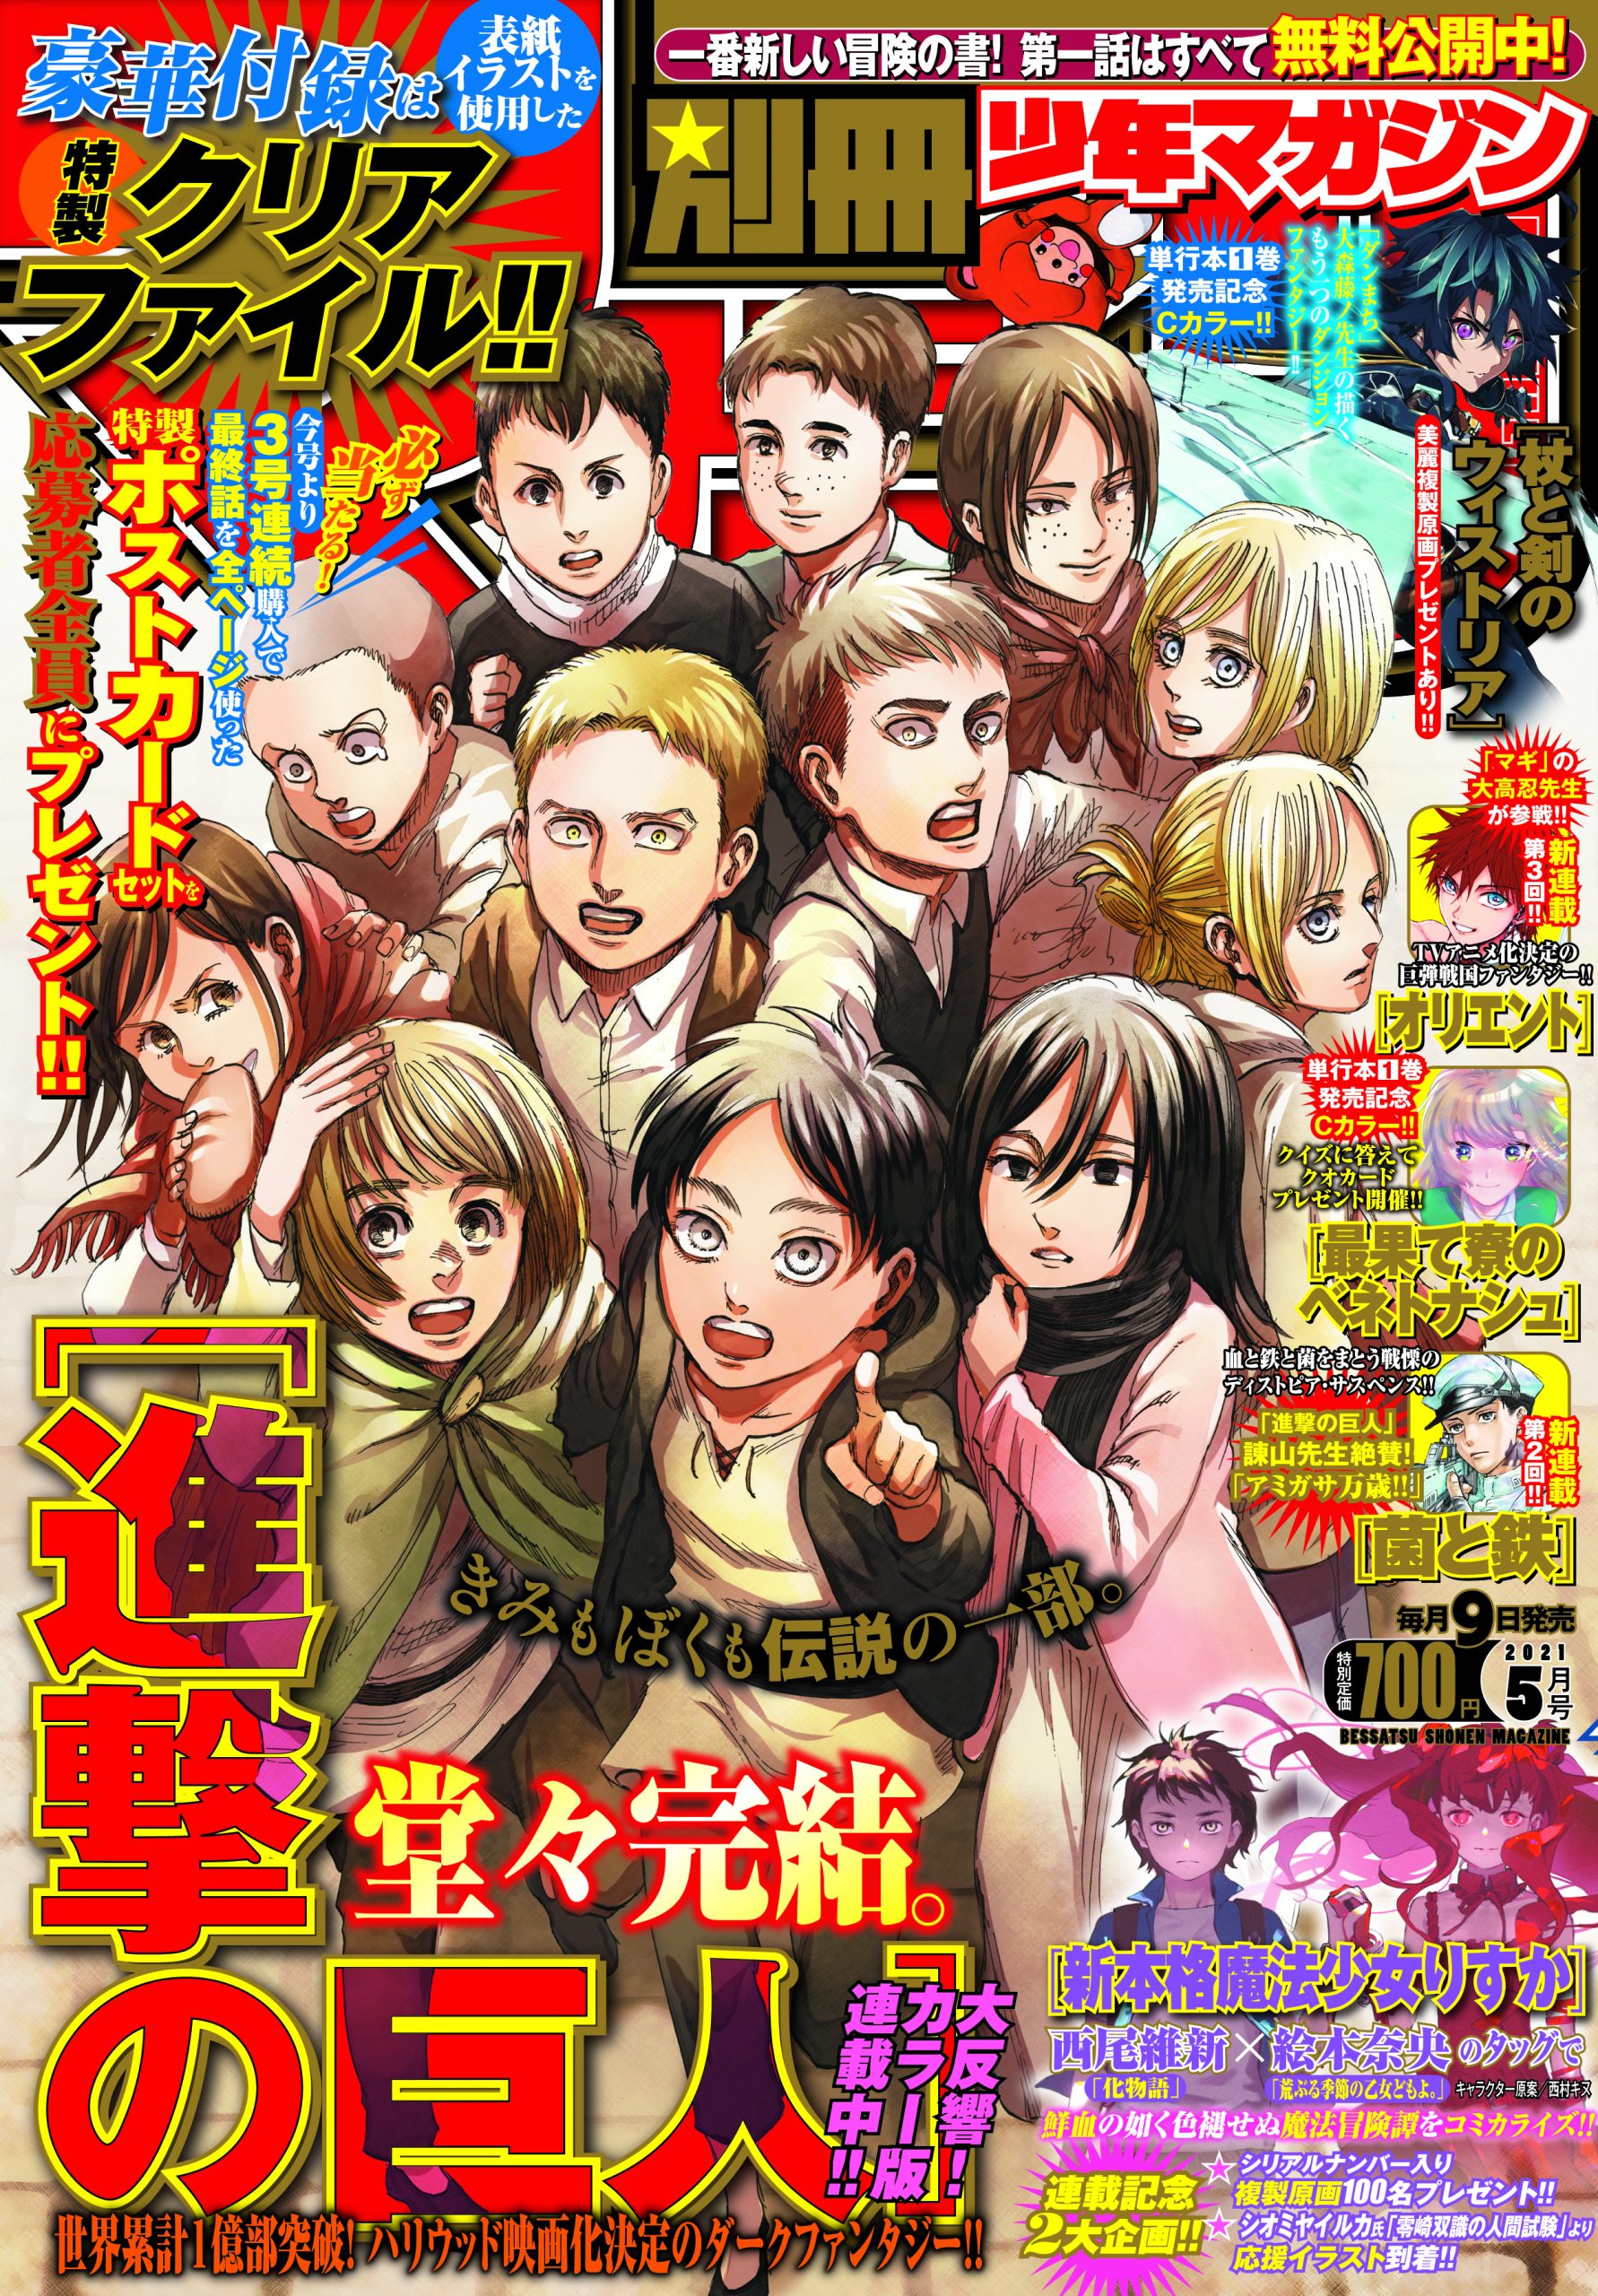 Attack on Titan Shingeki no Kyojin 1 - 33 Full Set Manga Comic Japanese  ver.